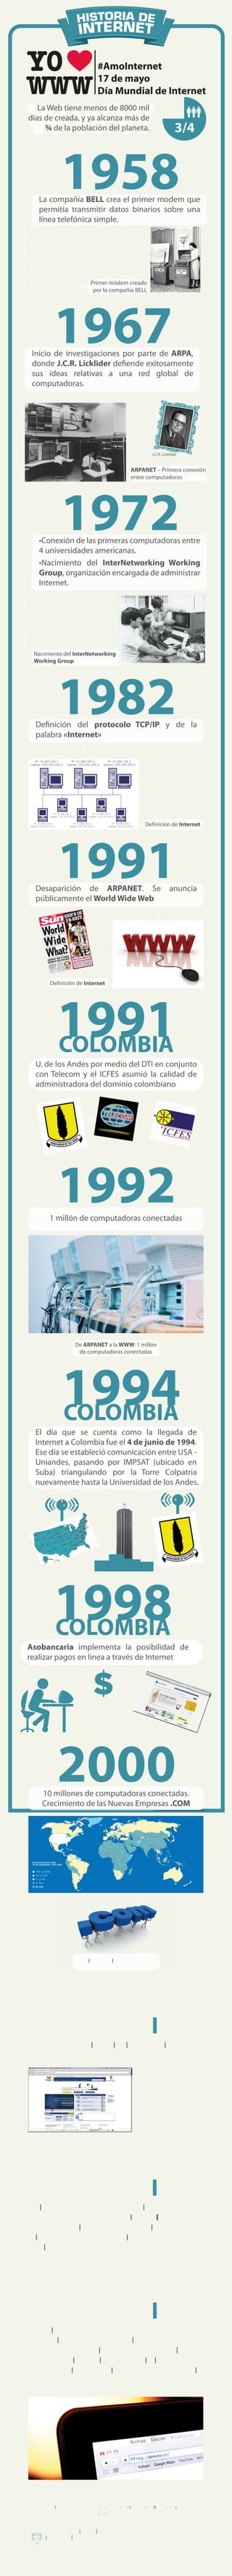 La Web tiene menos de 8000 mil
días de creada, y ya alcanza más de
     ¾ de la población del planeta.




                1958
   La compañía BELL crea el primer modem que
   permitía transmitir datos binarios sobre una
   línea telefónica simple.




                                Primer módem creado
                                 por la compañía BELL




            1967
 Inicio de investigaciones por parte de ARPA,
 donde J.C.R. Licklider defiende exitosamente
 sus ideas relativas a una red global de
 computadoras.




                                                                   J.C.R. Licklider


                                                       ARPANET – Primera conexión
                                                       entre computadoras




                1972
   •Conexión de las primeras computadoras entre
   4 universidades americanas.
   •Nacimiento del InterNetworking Working
   Group, organización encargada de administrar
   Internet.




 Nacimiento del InterNetworking
 Working Group




              1982
  Definición del protocolo TCP/IP y de la
  palabra «Internet»




                                                               Definición de Internet




              1991
  Desaparición de ARPANET. Se
  públicamente el World Wide Web
                                                                              anuncia




         Definición de Internet




             1991
             COLOMBIA
  U. de los Andes por medio del DTI en conjunto
  con Telecom y el ICFES asumió la calidad de
  administradora del dominio colombiano




             1992
         1 millón de computadoras conectadas




                        De ARPANET a la WWW: 1 millón
                         de computadoras conectadas




                1994
                COLOMBIA
  El día que se cuenta como la llegada de
  Internet a Colombia fue el 4 de junio de 1994.
  Ese día se estableció comunicación entre USA -
  Uniandes, pasando por IMPSAT (ubicado en
  Suba) triangulando por la Torre Colpatria
  nuevamente hasta la Universidad de los Andes.




            1998
            COLOMBIA
Asobancaria implementa la posibilidad de
realizar pagos en línea a través de Internet




              2000
     10 millones de computadoras conectadas.
     Crecimiento de las Nuevas Empresas .COM




                          Explosión de la burbuja .COM




             2000
             COLOMBIA
  Lanzamiento del Portal del Estado Colombiano




             2002
             COLOMBIA
  El 7 de mayo de 2002, el Ministerio de
  Comunicaciones, mediante la Resolución 600,
  entró a regular de manera parcial y transitoria
  la administración del dominio web
  colombiano.




             2006
             COLOMBIA
  En el 2006 y a partir de una serie de debates
  ante el Consejo de Estado, el Congreso y frente
  a una iniciativa del Gobierno, se expidió la Ley
  1065 que le dio al Ministerio TIC la autoridad
  para reglamentar la administración del
  dominio .CO.




 Referencias información e imágenes
 •http://commons.wikimedia.org/
 •http://tanialu.co/2010/01/12/historia-de-internet-en-el-mundo-y-su-llegada-a-colombia/
 •http://es.wikipedia.org/wiki/Historia_de_internet
 